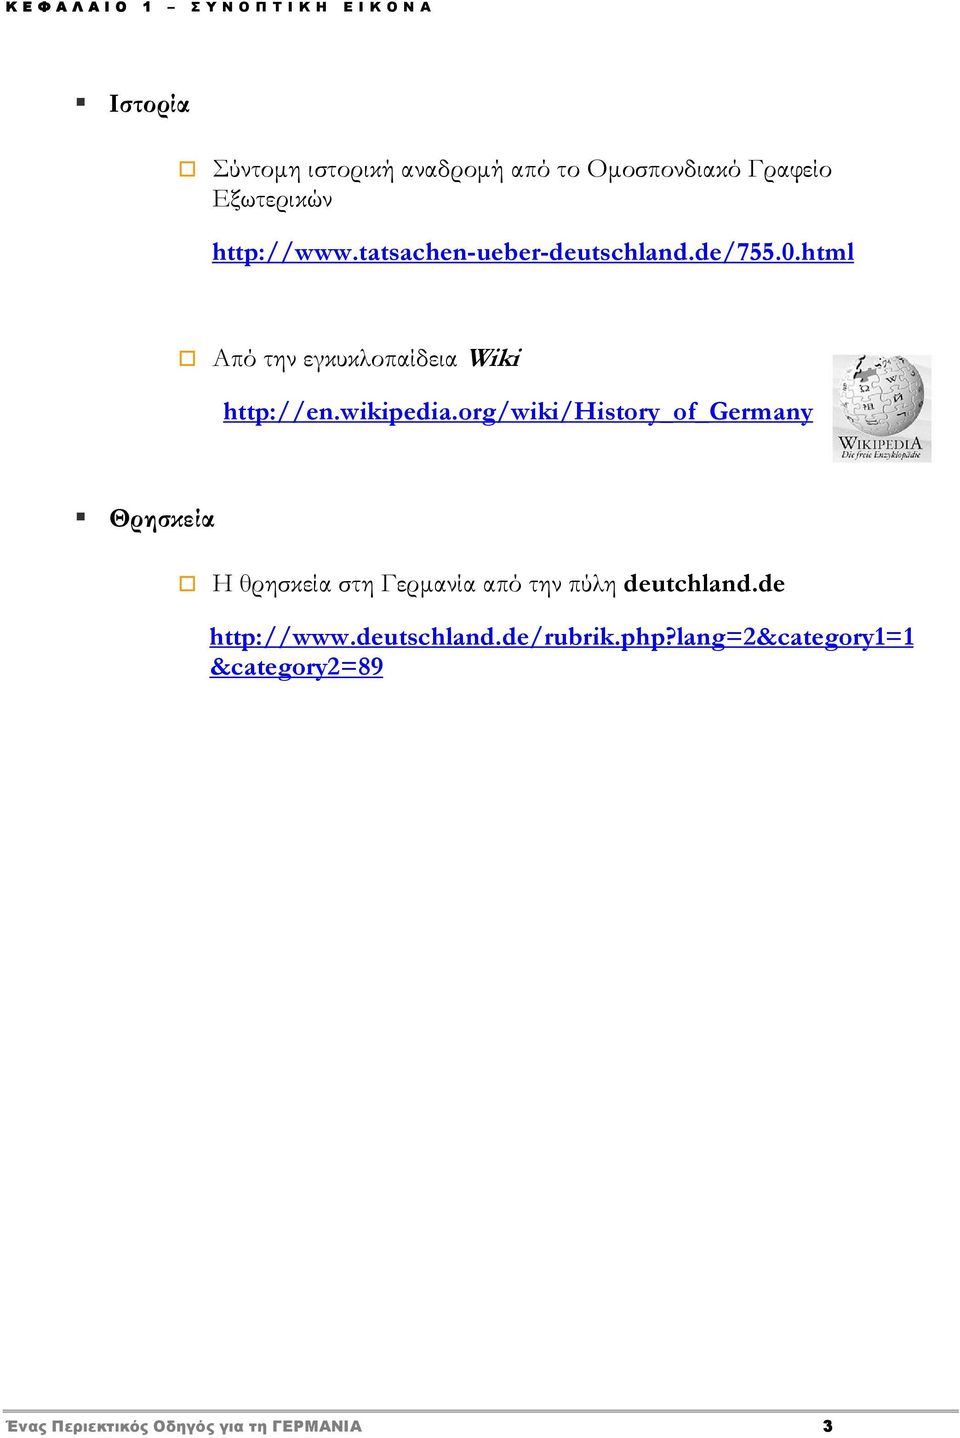 org/wiki/history_of_germany Θρησκεία Η θρησκεία στη Γερμανία από την πύλη deutchland.de http://www.